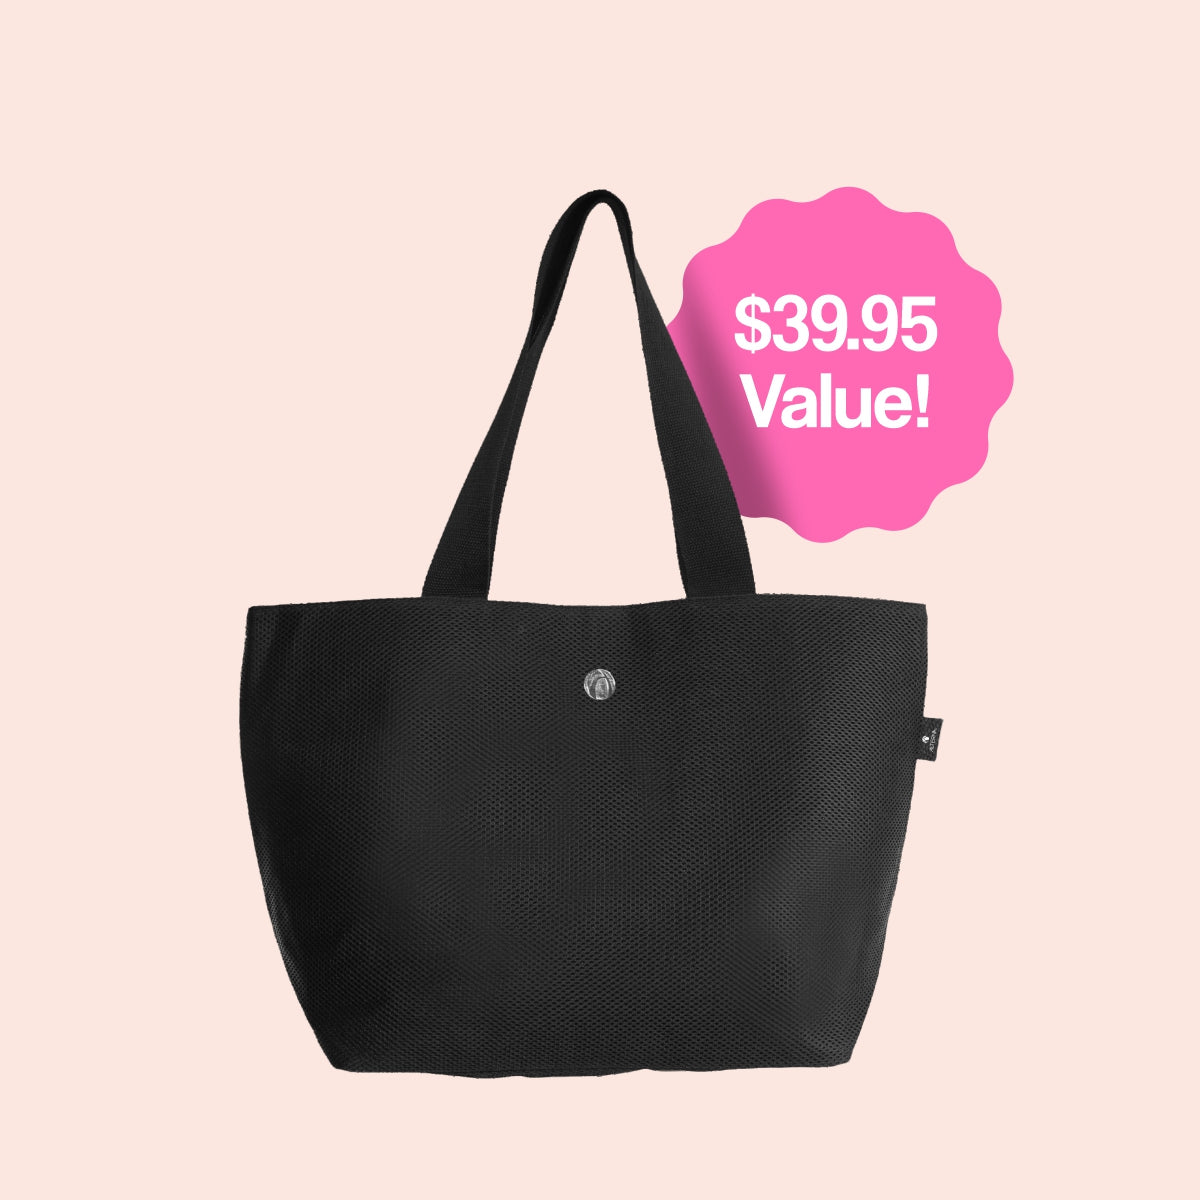 Alterna Black Tote Bag - Value $39.95